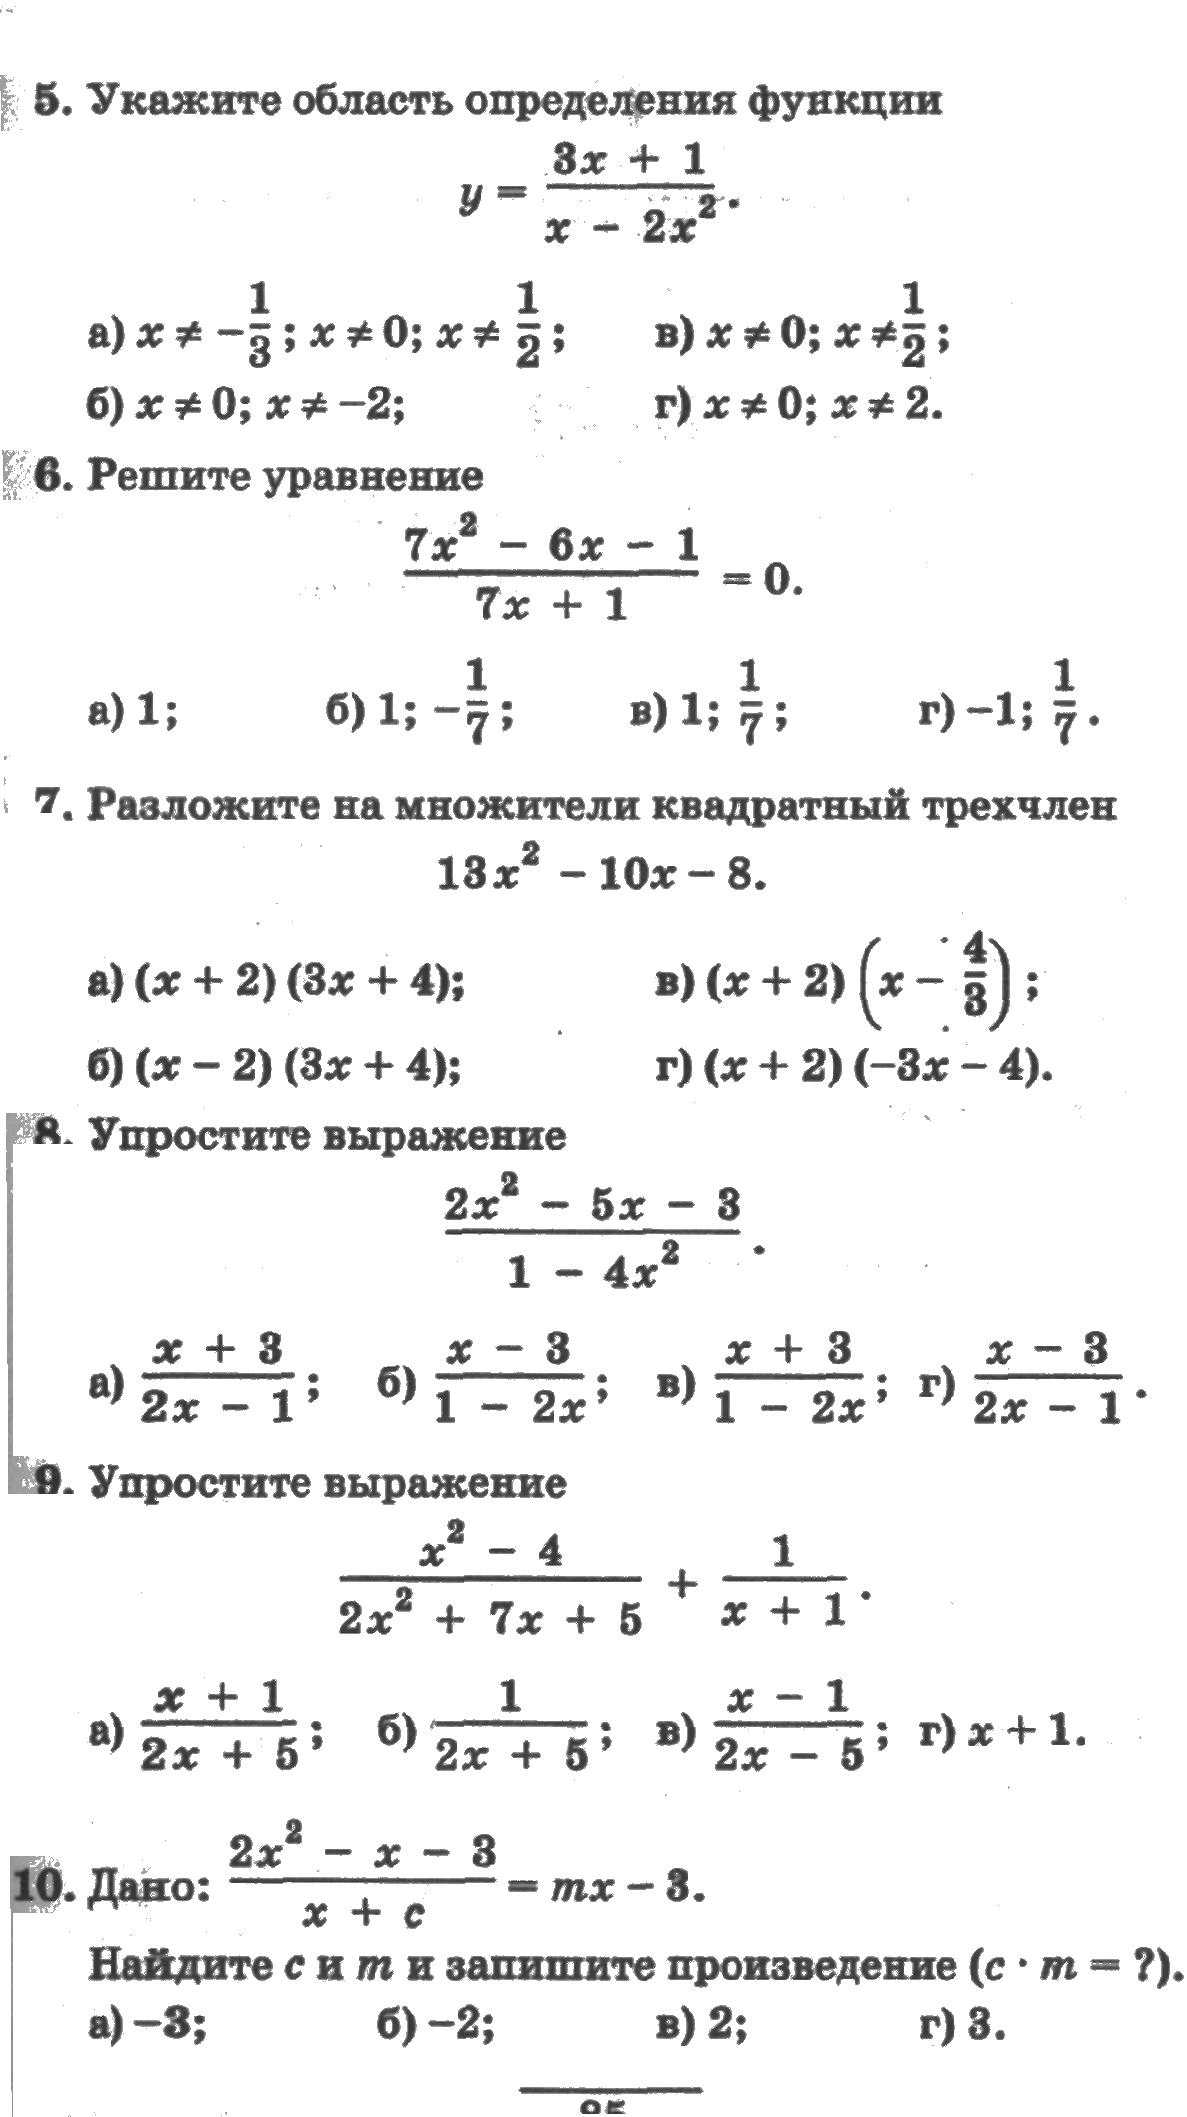 Методические разработки по алгебре 9 класс. Маршрутные листы.